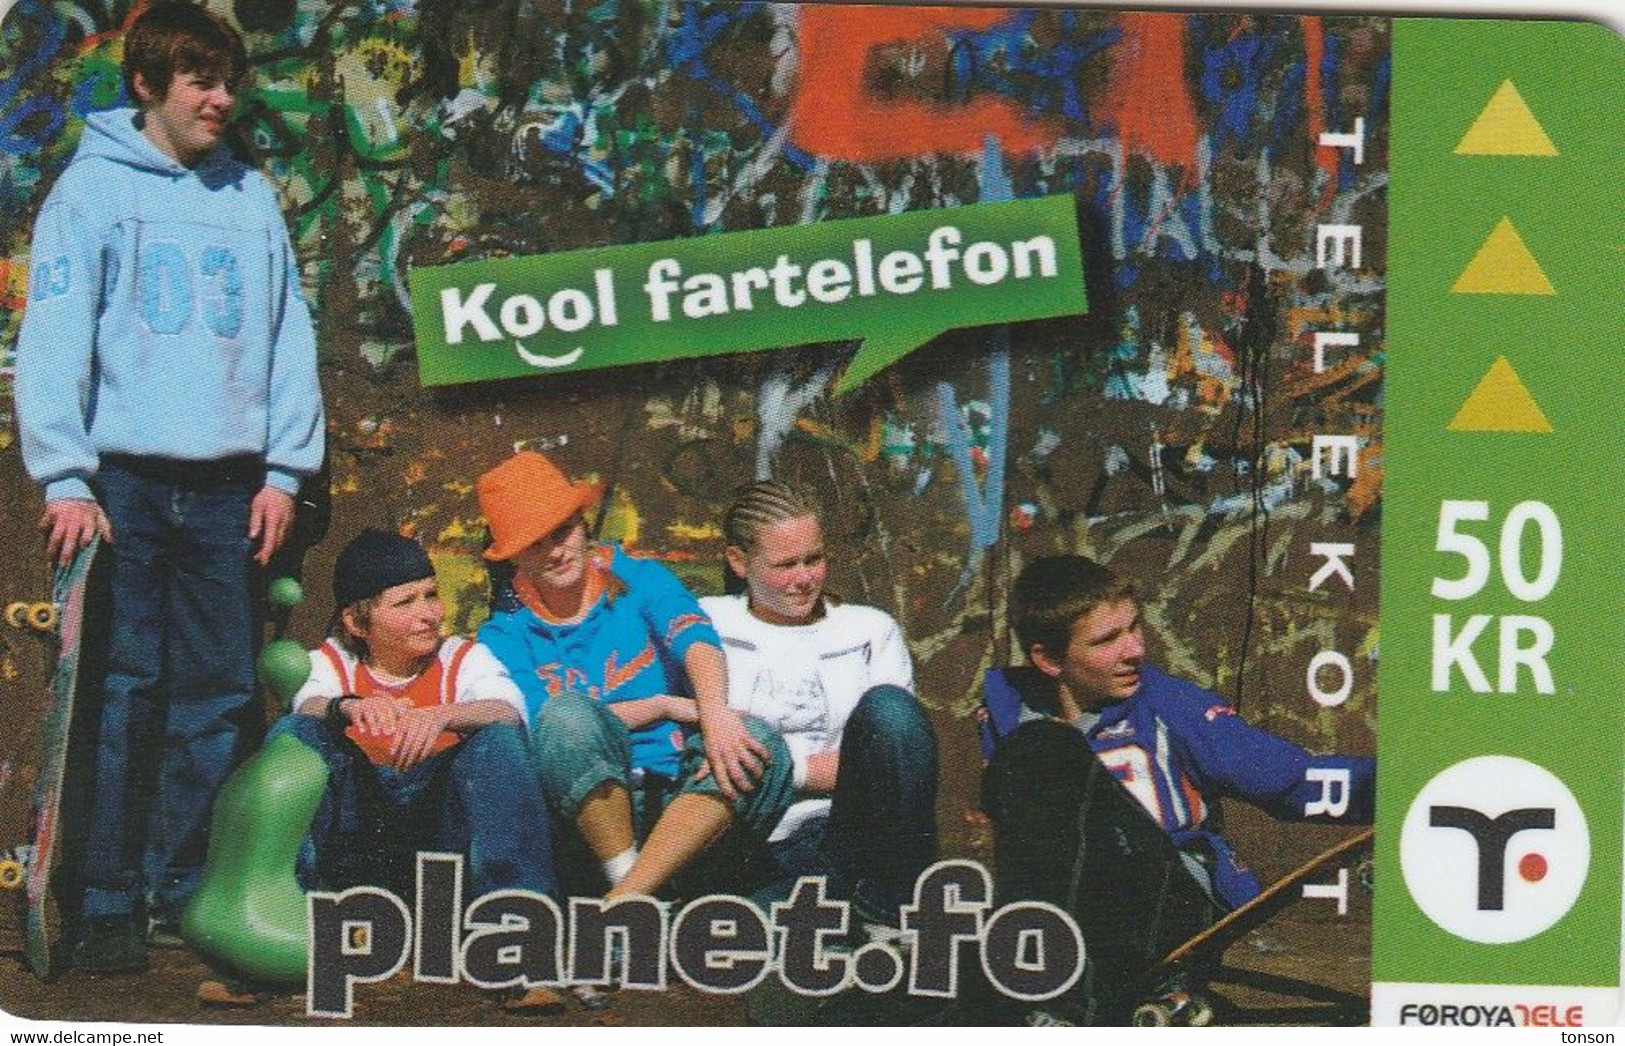 Faroe Islands, OR-004, 50 Kr ,  Planet.fo, Children, 2 Scans. - Féroé (Iles)